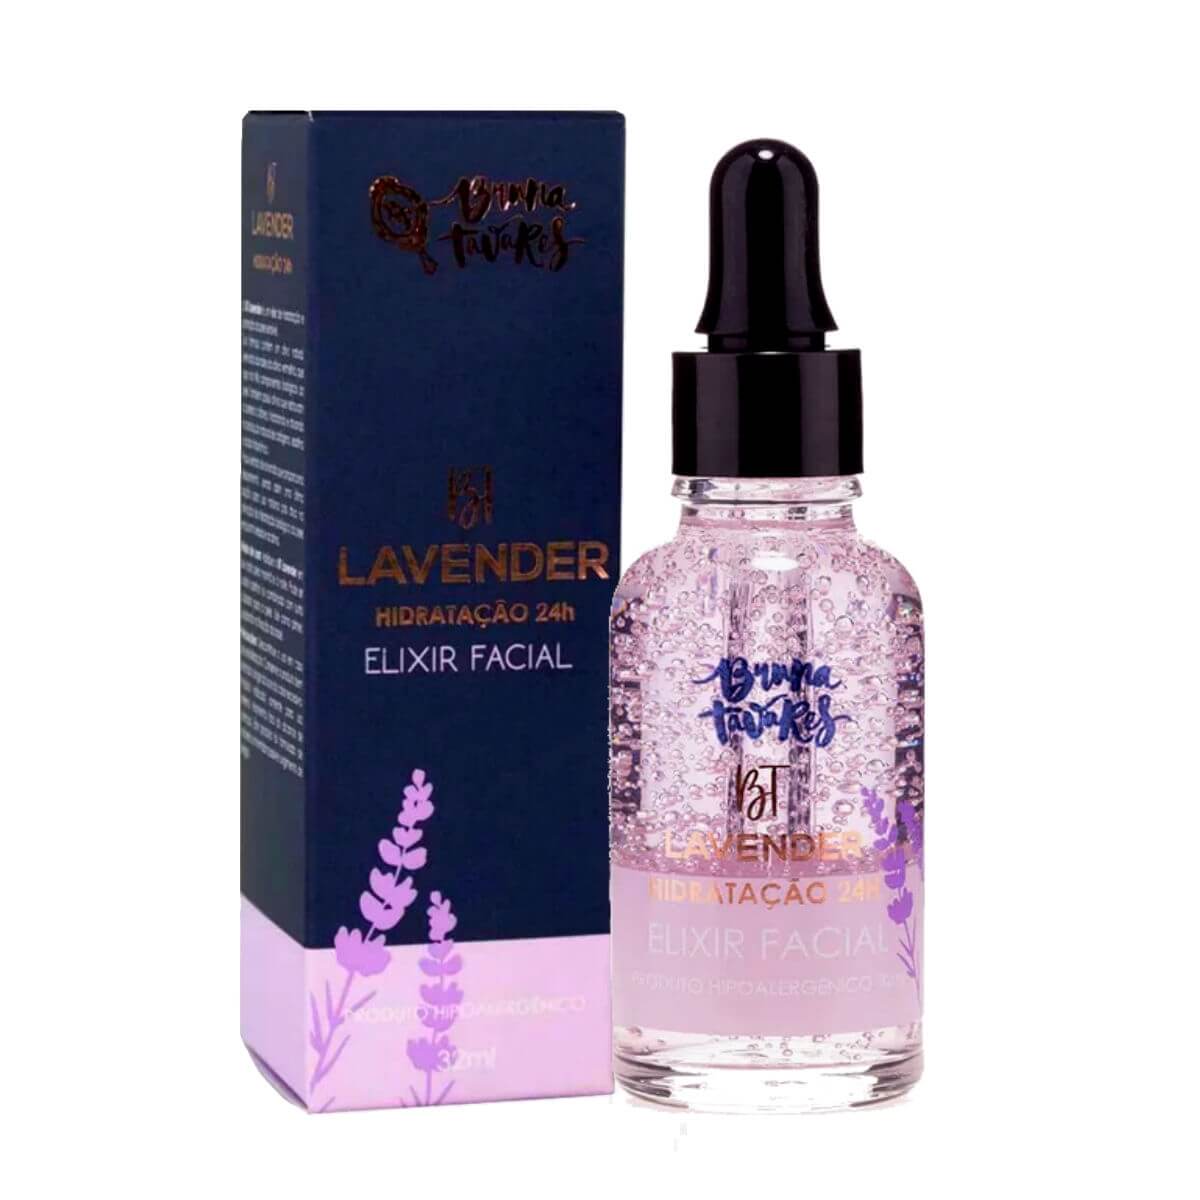 Bt Elixir Facial Lavender Hidratação 24h - Bruna Tavares